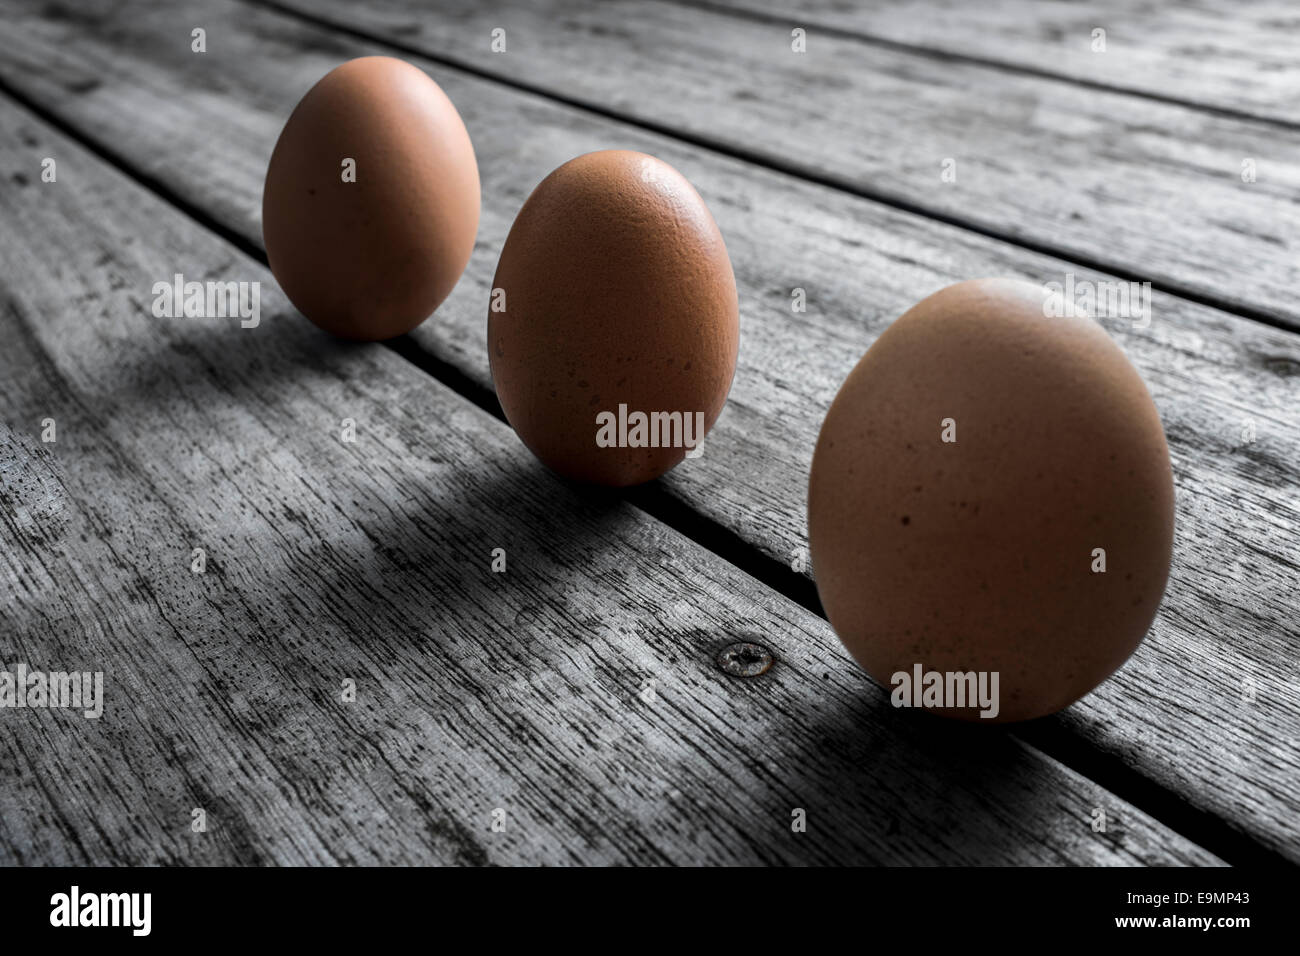 Drei kostenlose reichen Hühnereiern auf einem entsättigten hölzernen Hintergrund angeordnet. Stockfoto